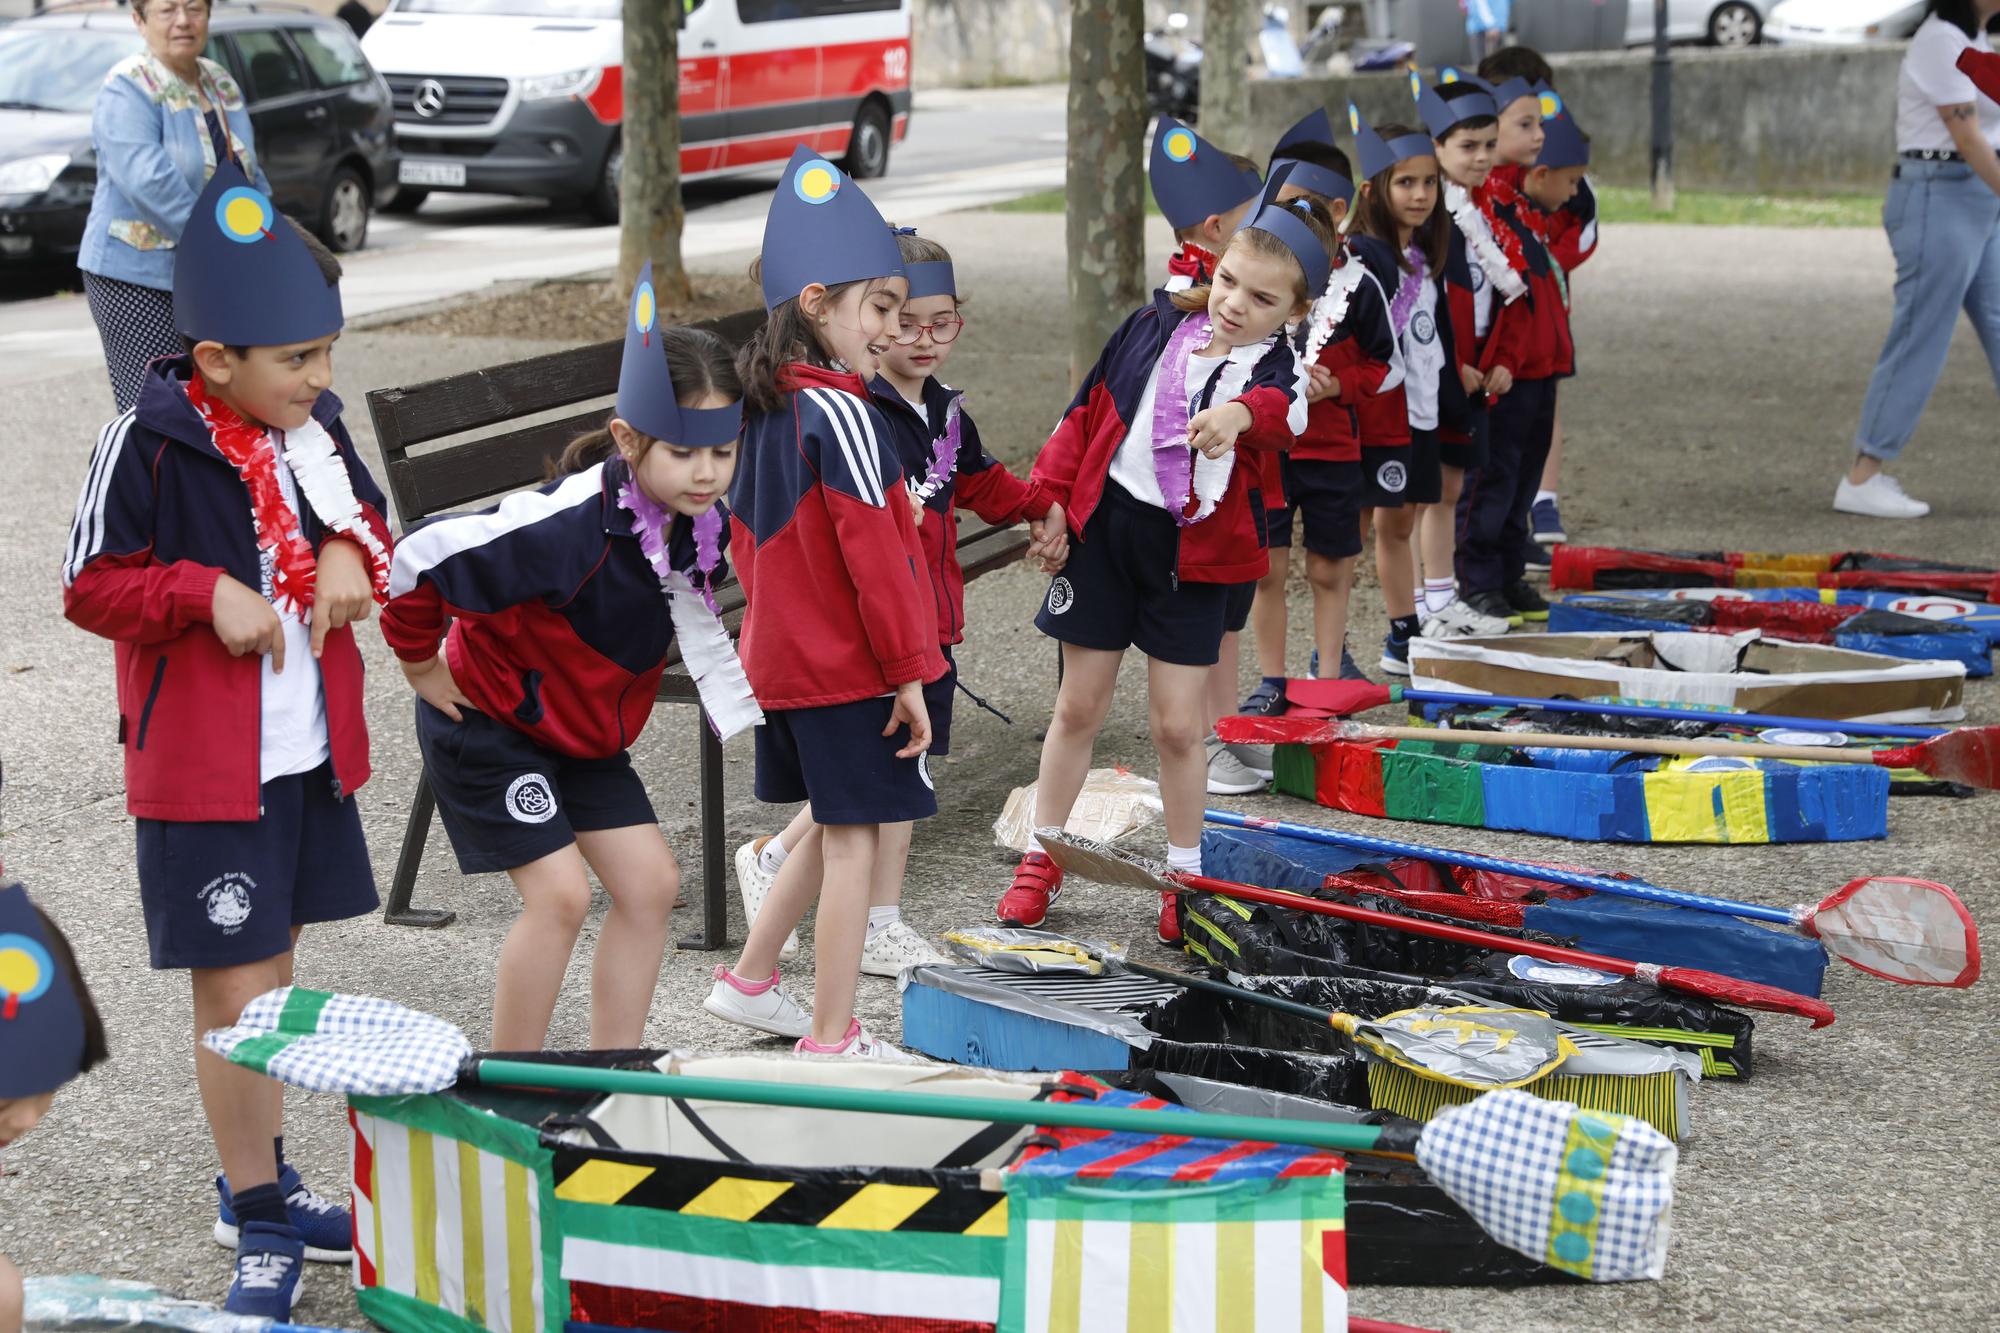 EN IMÁGENES: Así fue la recreación del Descenso del Sella con los alumnos de infantil del colegio San Miguel en Gijón